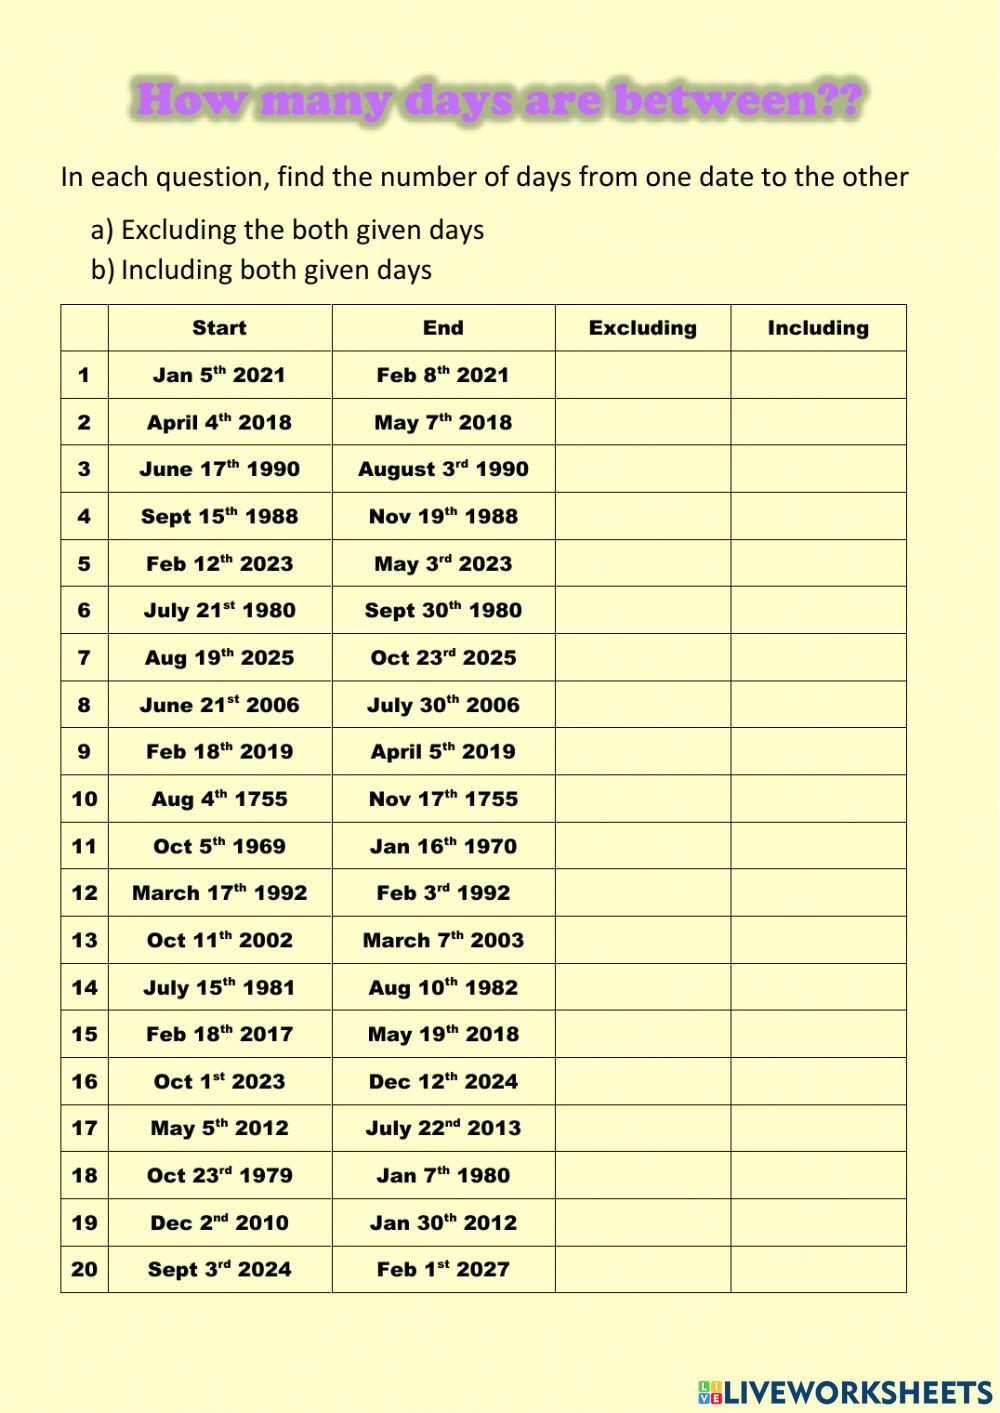 WW Time duration - days